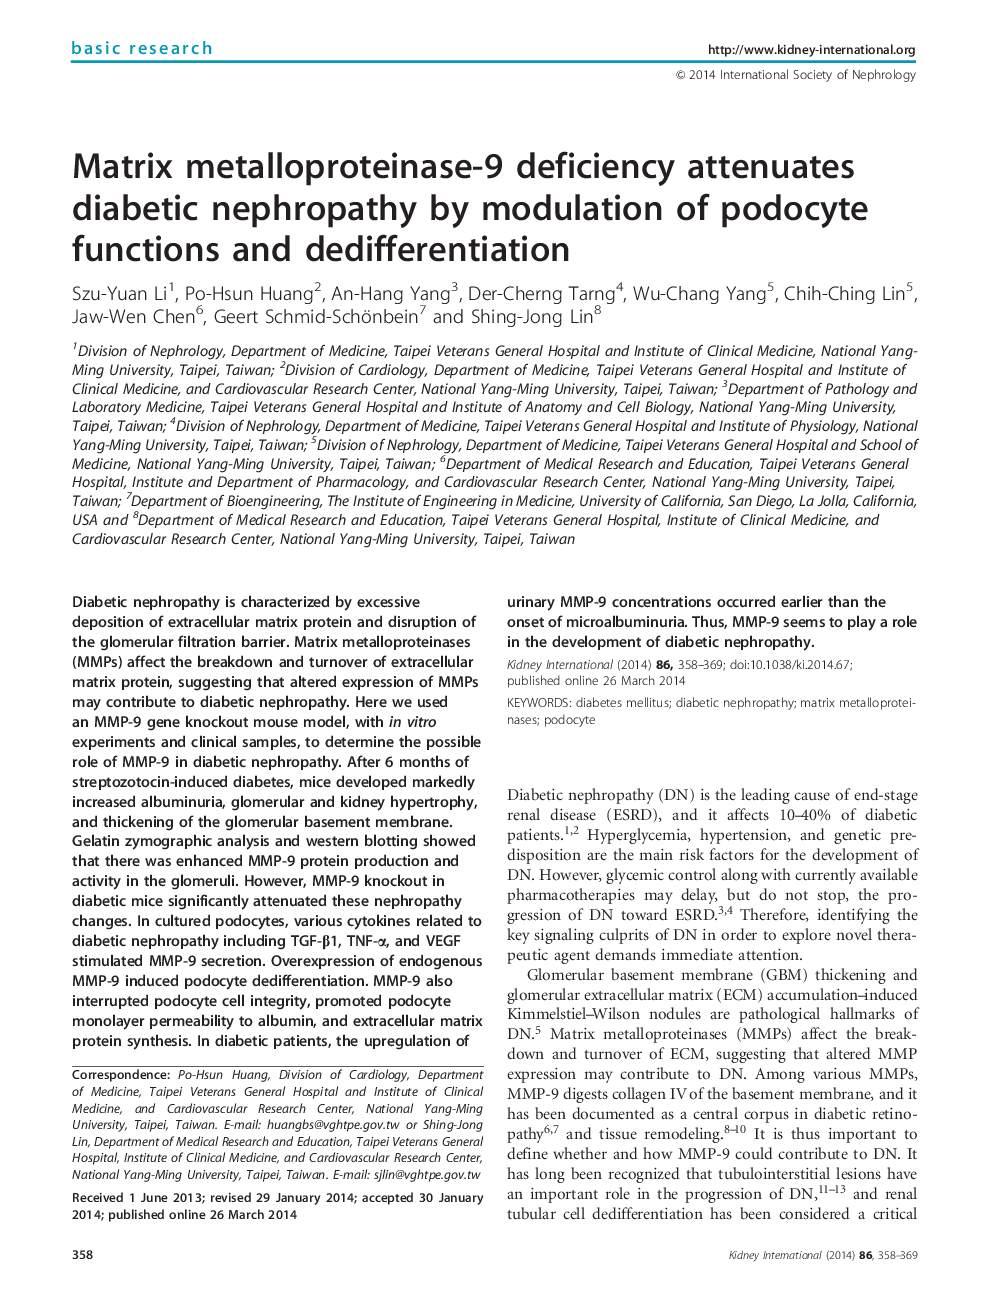 نقص ماتریکس متالوپروتئیناز 9 موجب کاهش نفروپاتی دیابتی به وسیله مدولاسیون توابع پادوکسی و تقسیم بندی می شود 